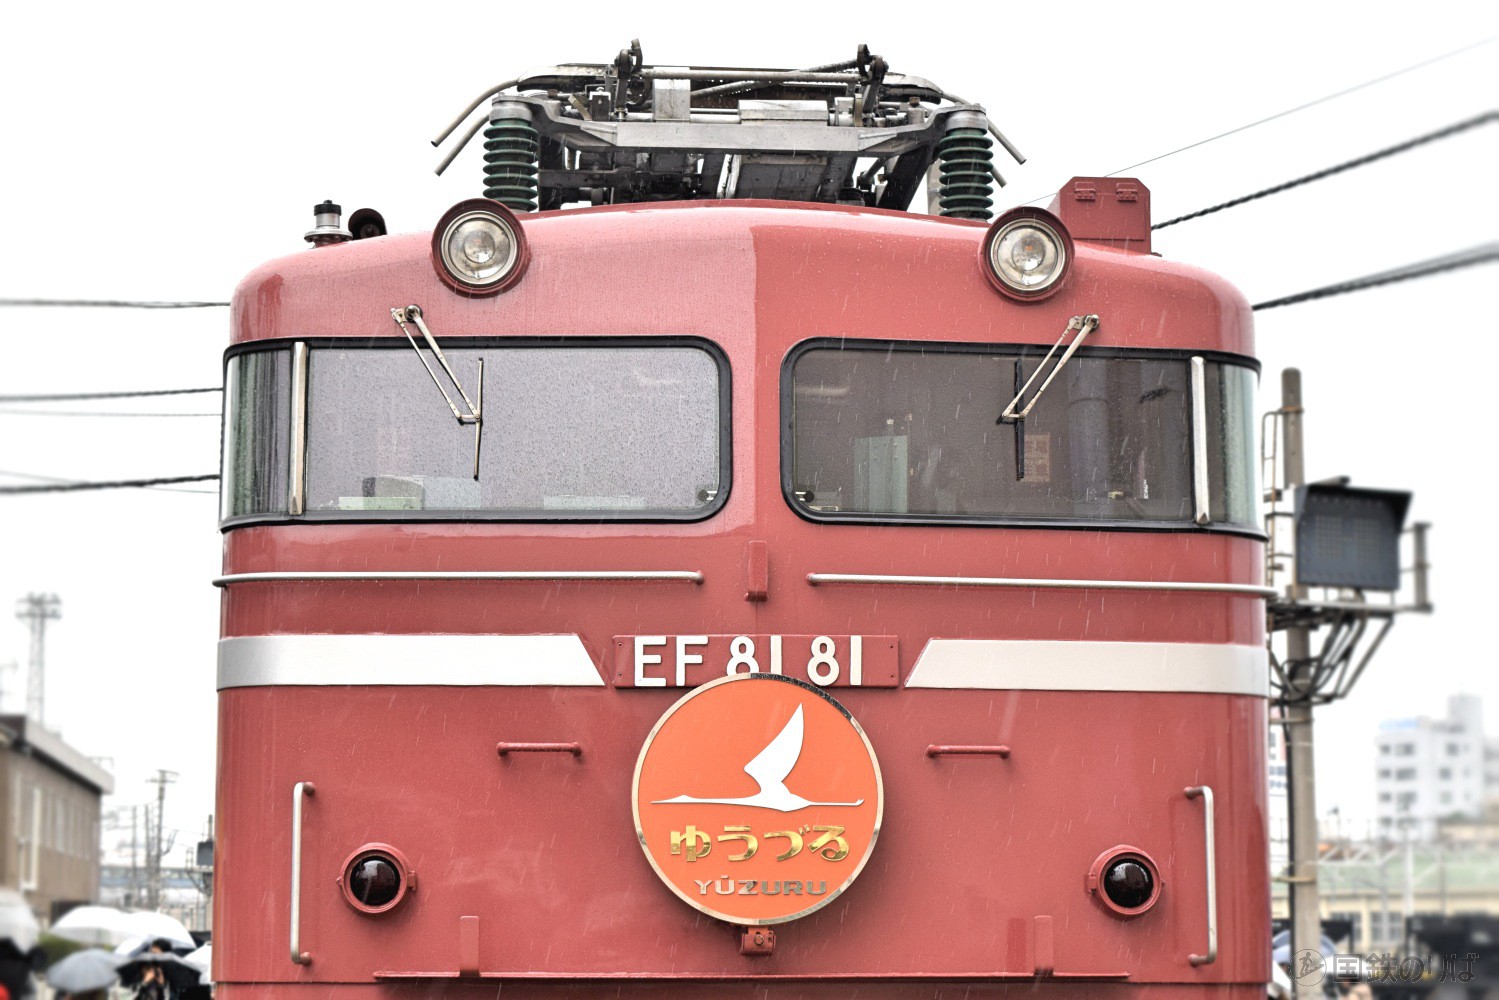 EF81-81号機